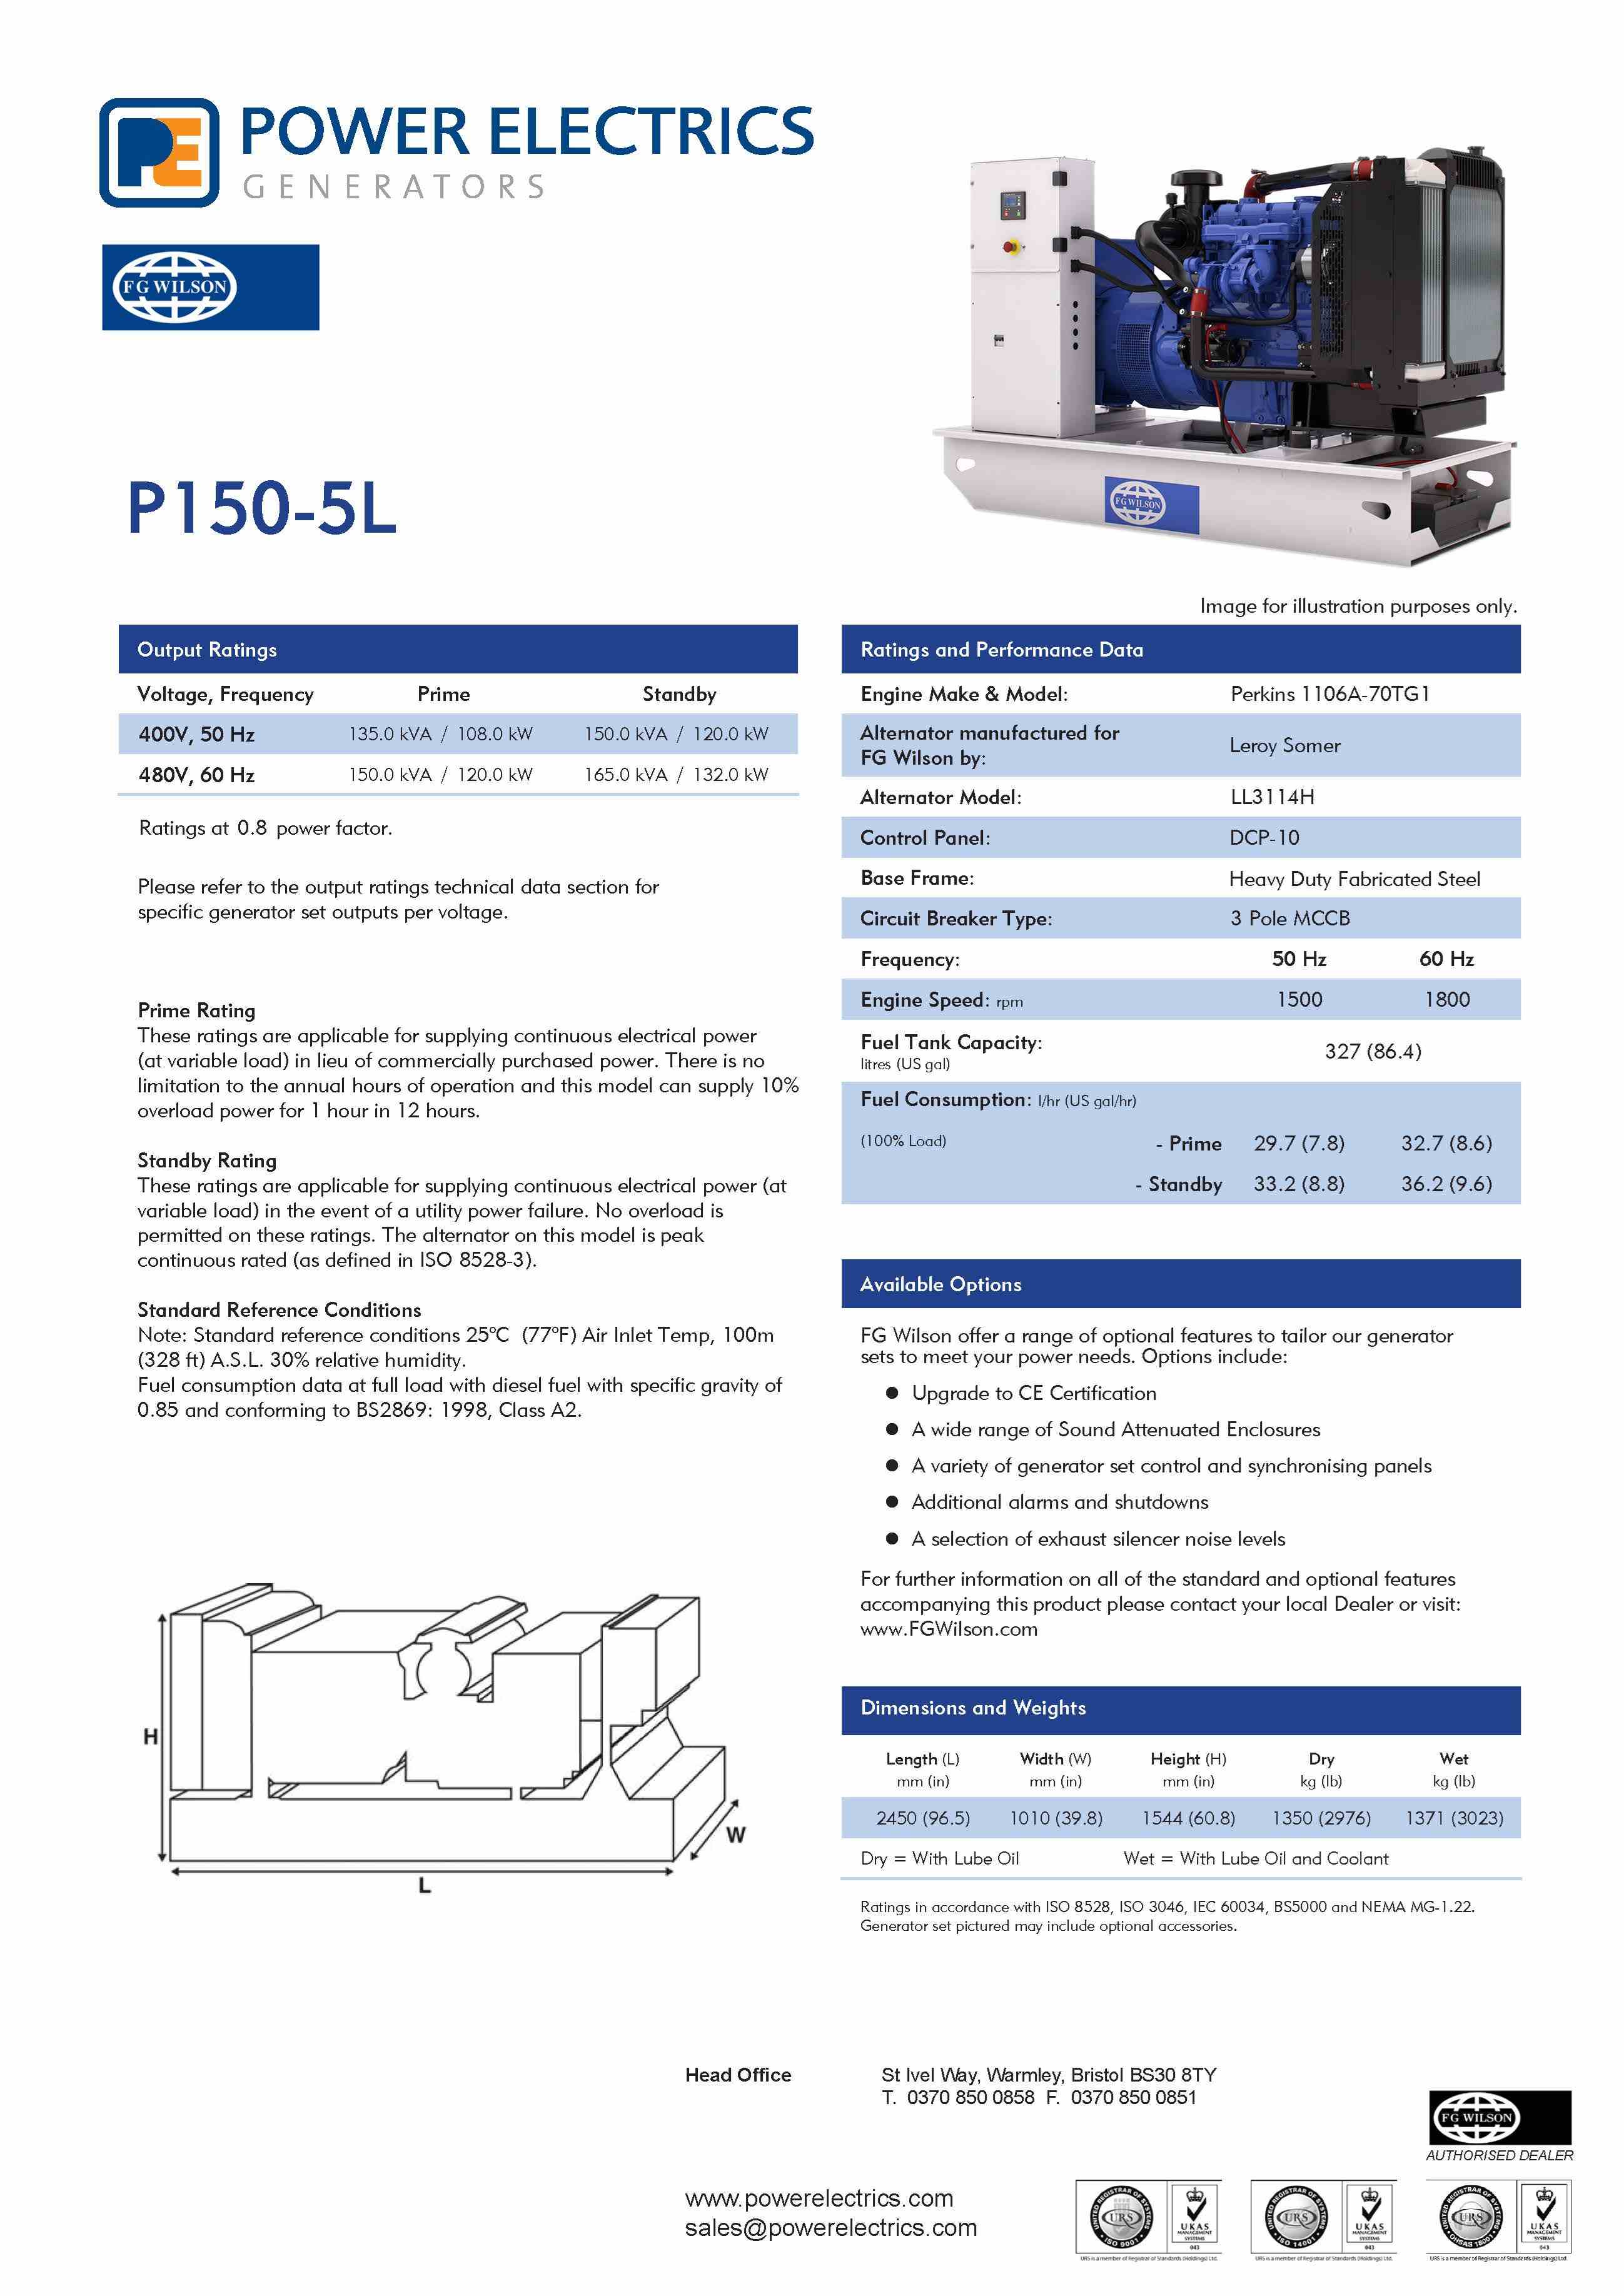 P150-5L generator FG Wilson specification sheet